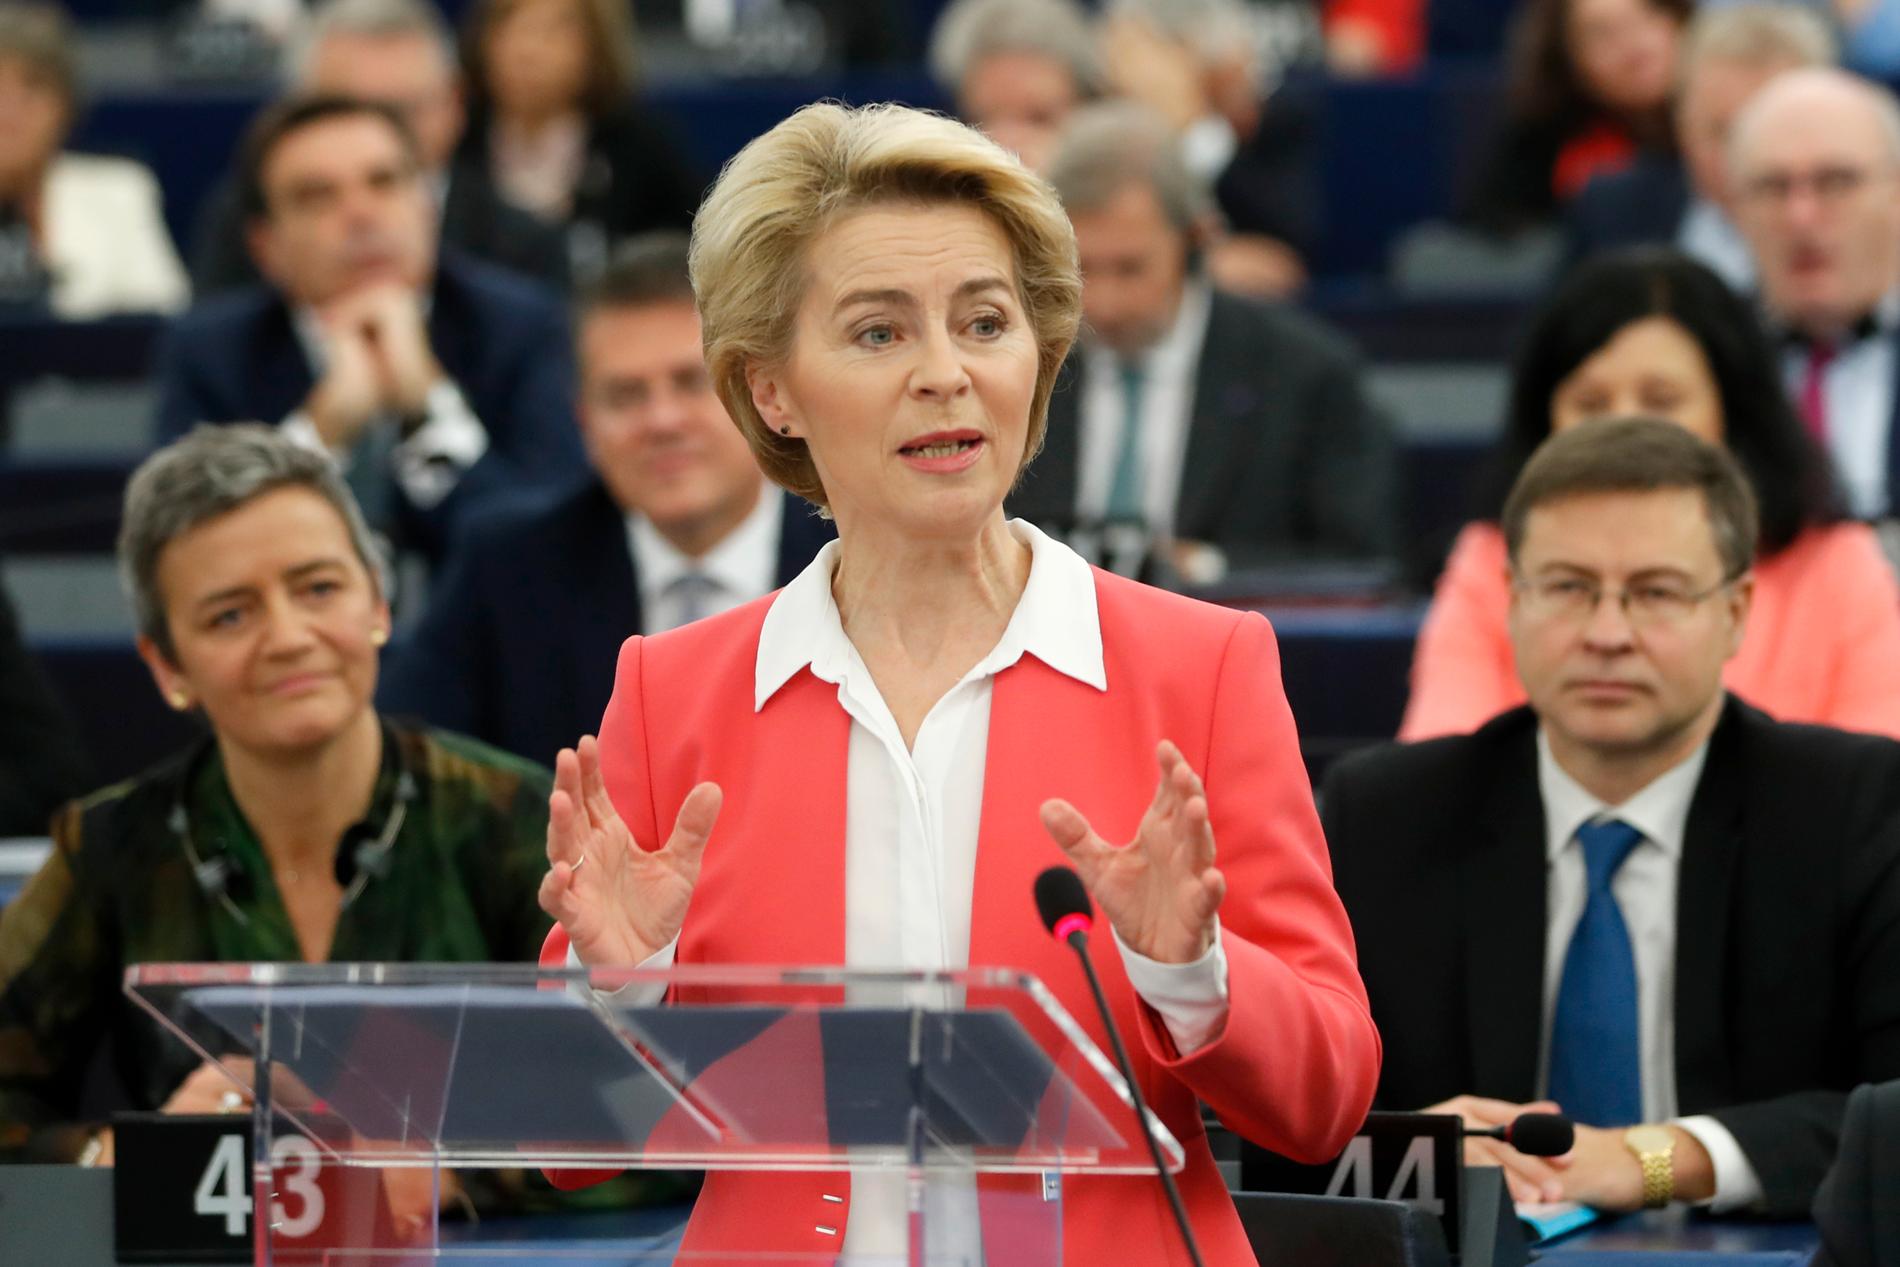 EU:s tillträdande kommissionsordförande Ursula von der Leyen talar i EU-parlamentet. Bakom henne syns den exekutiva viceordföranden Margrethe Vestager (till vänster) och Valdis Dombrovskis (till höger).